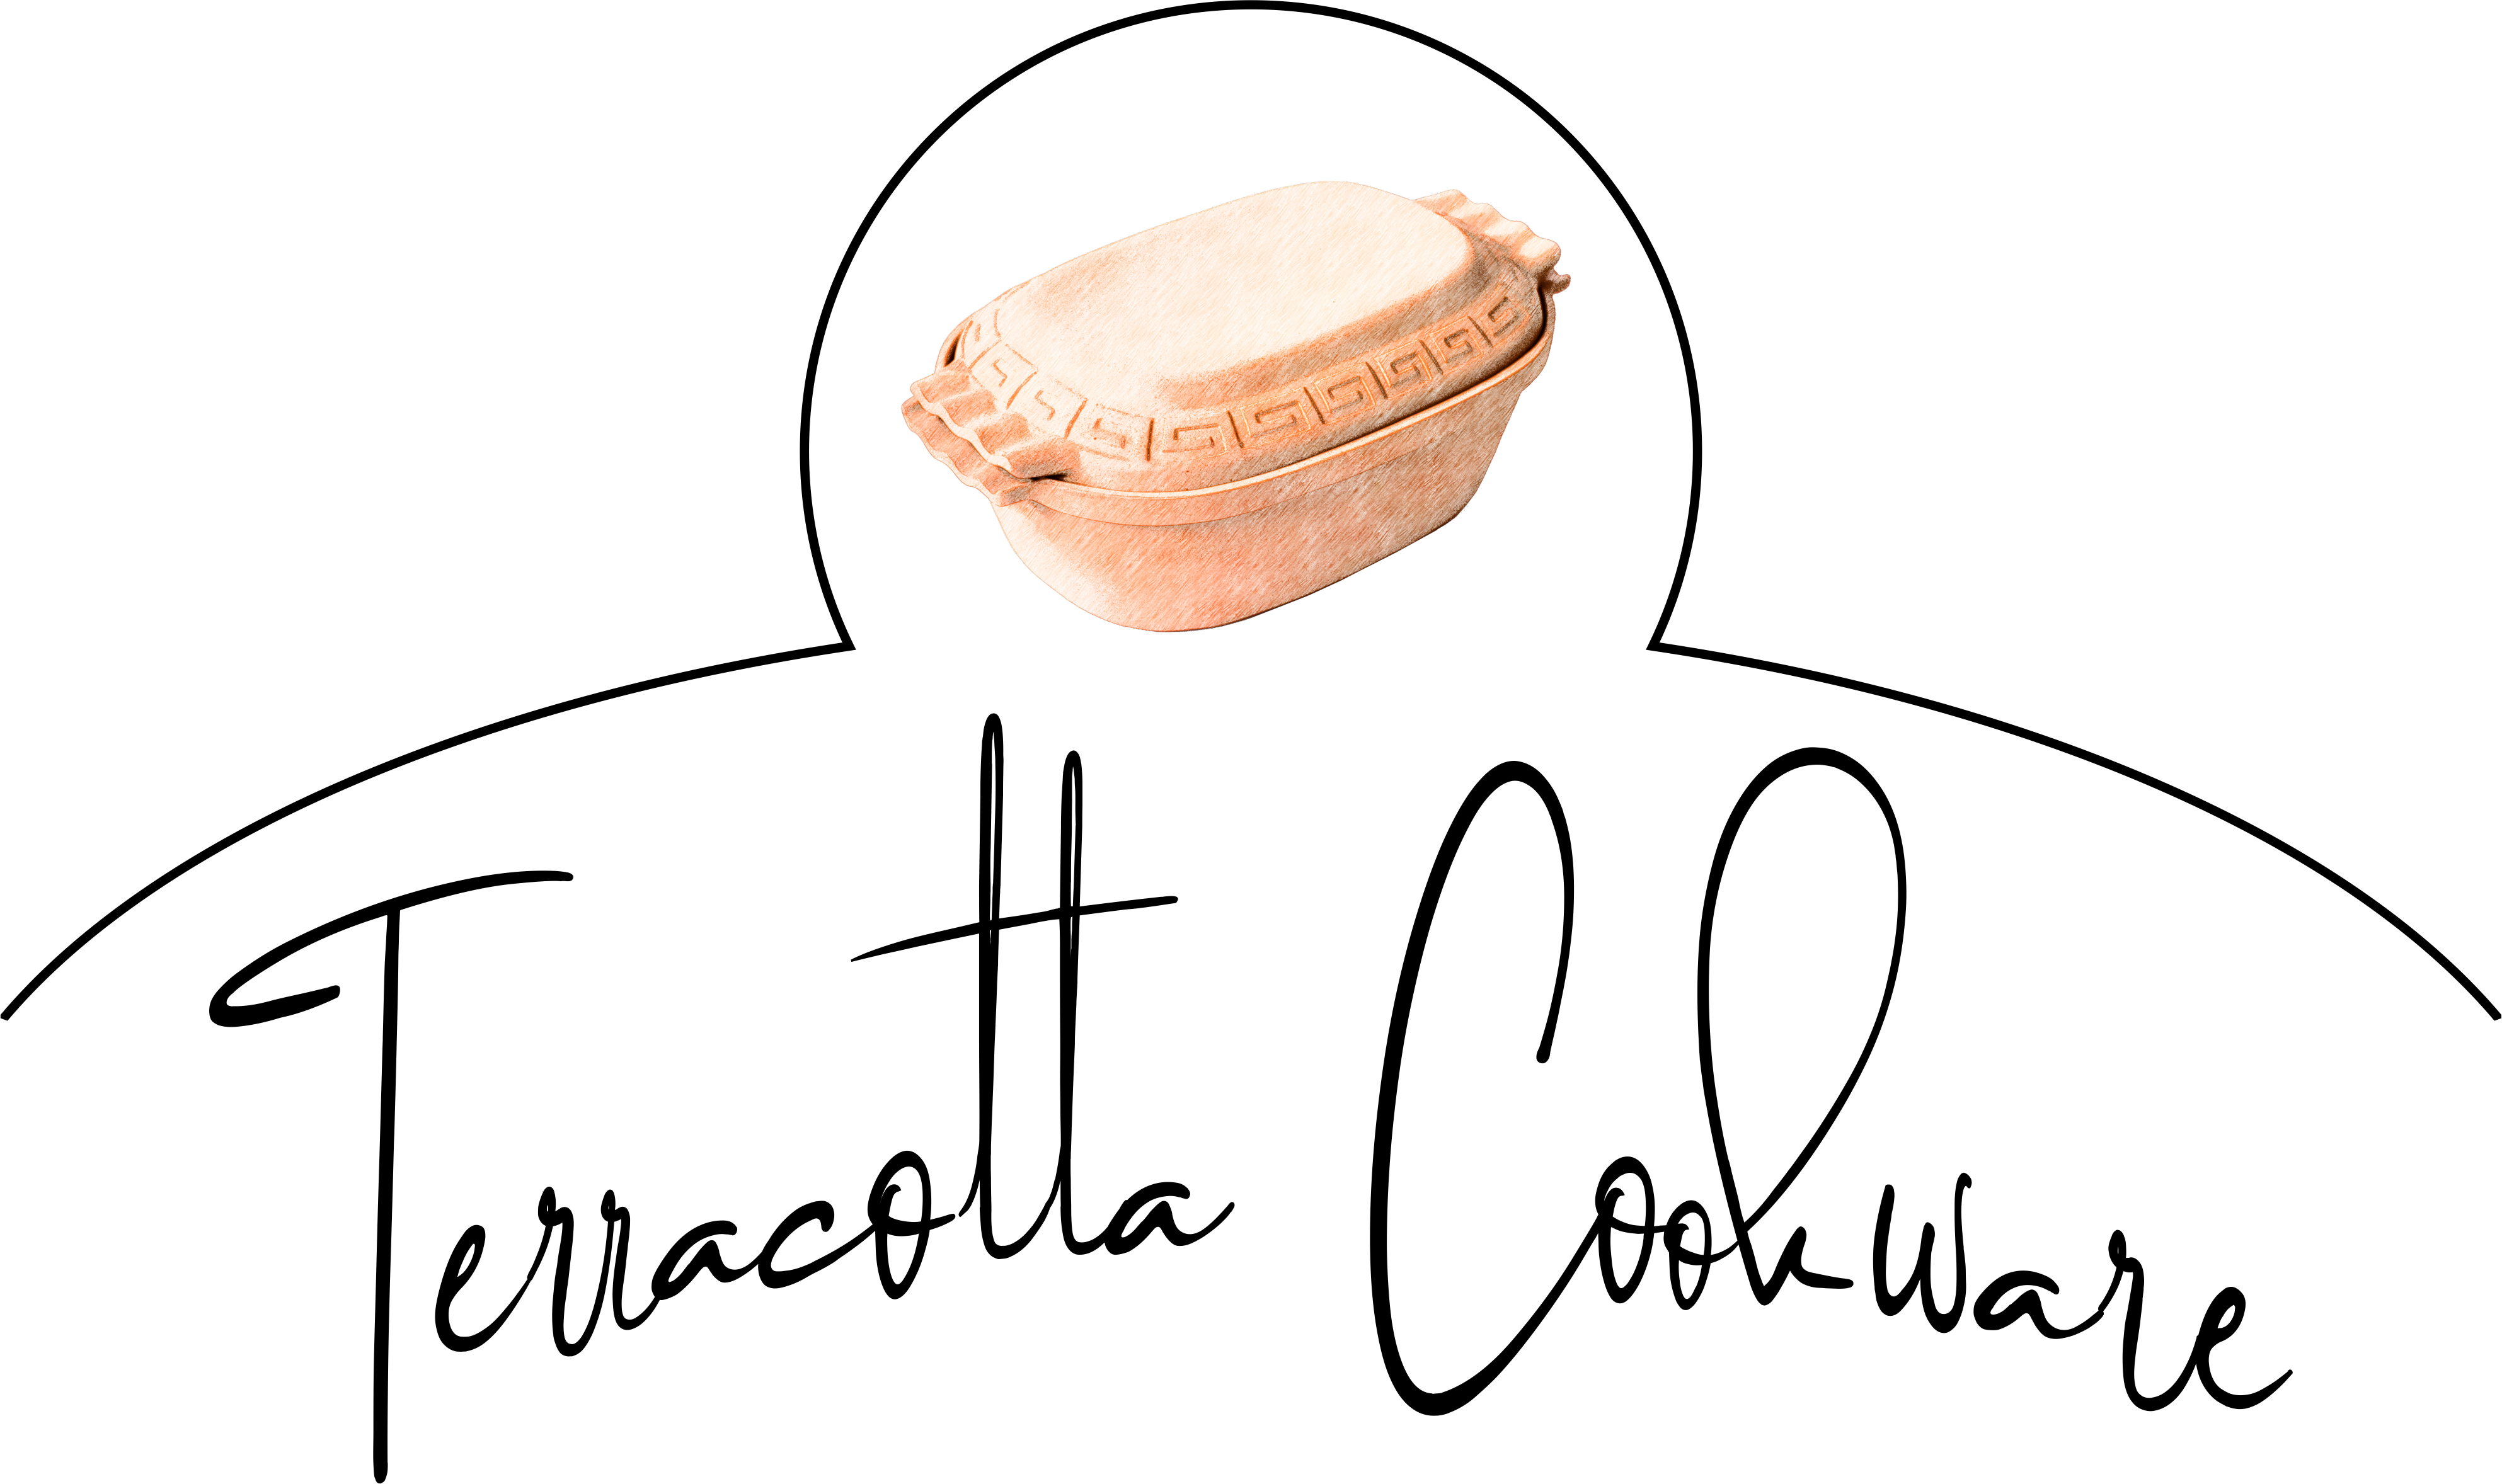 Terracotta Cookware